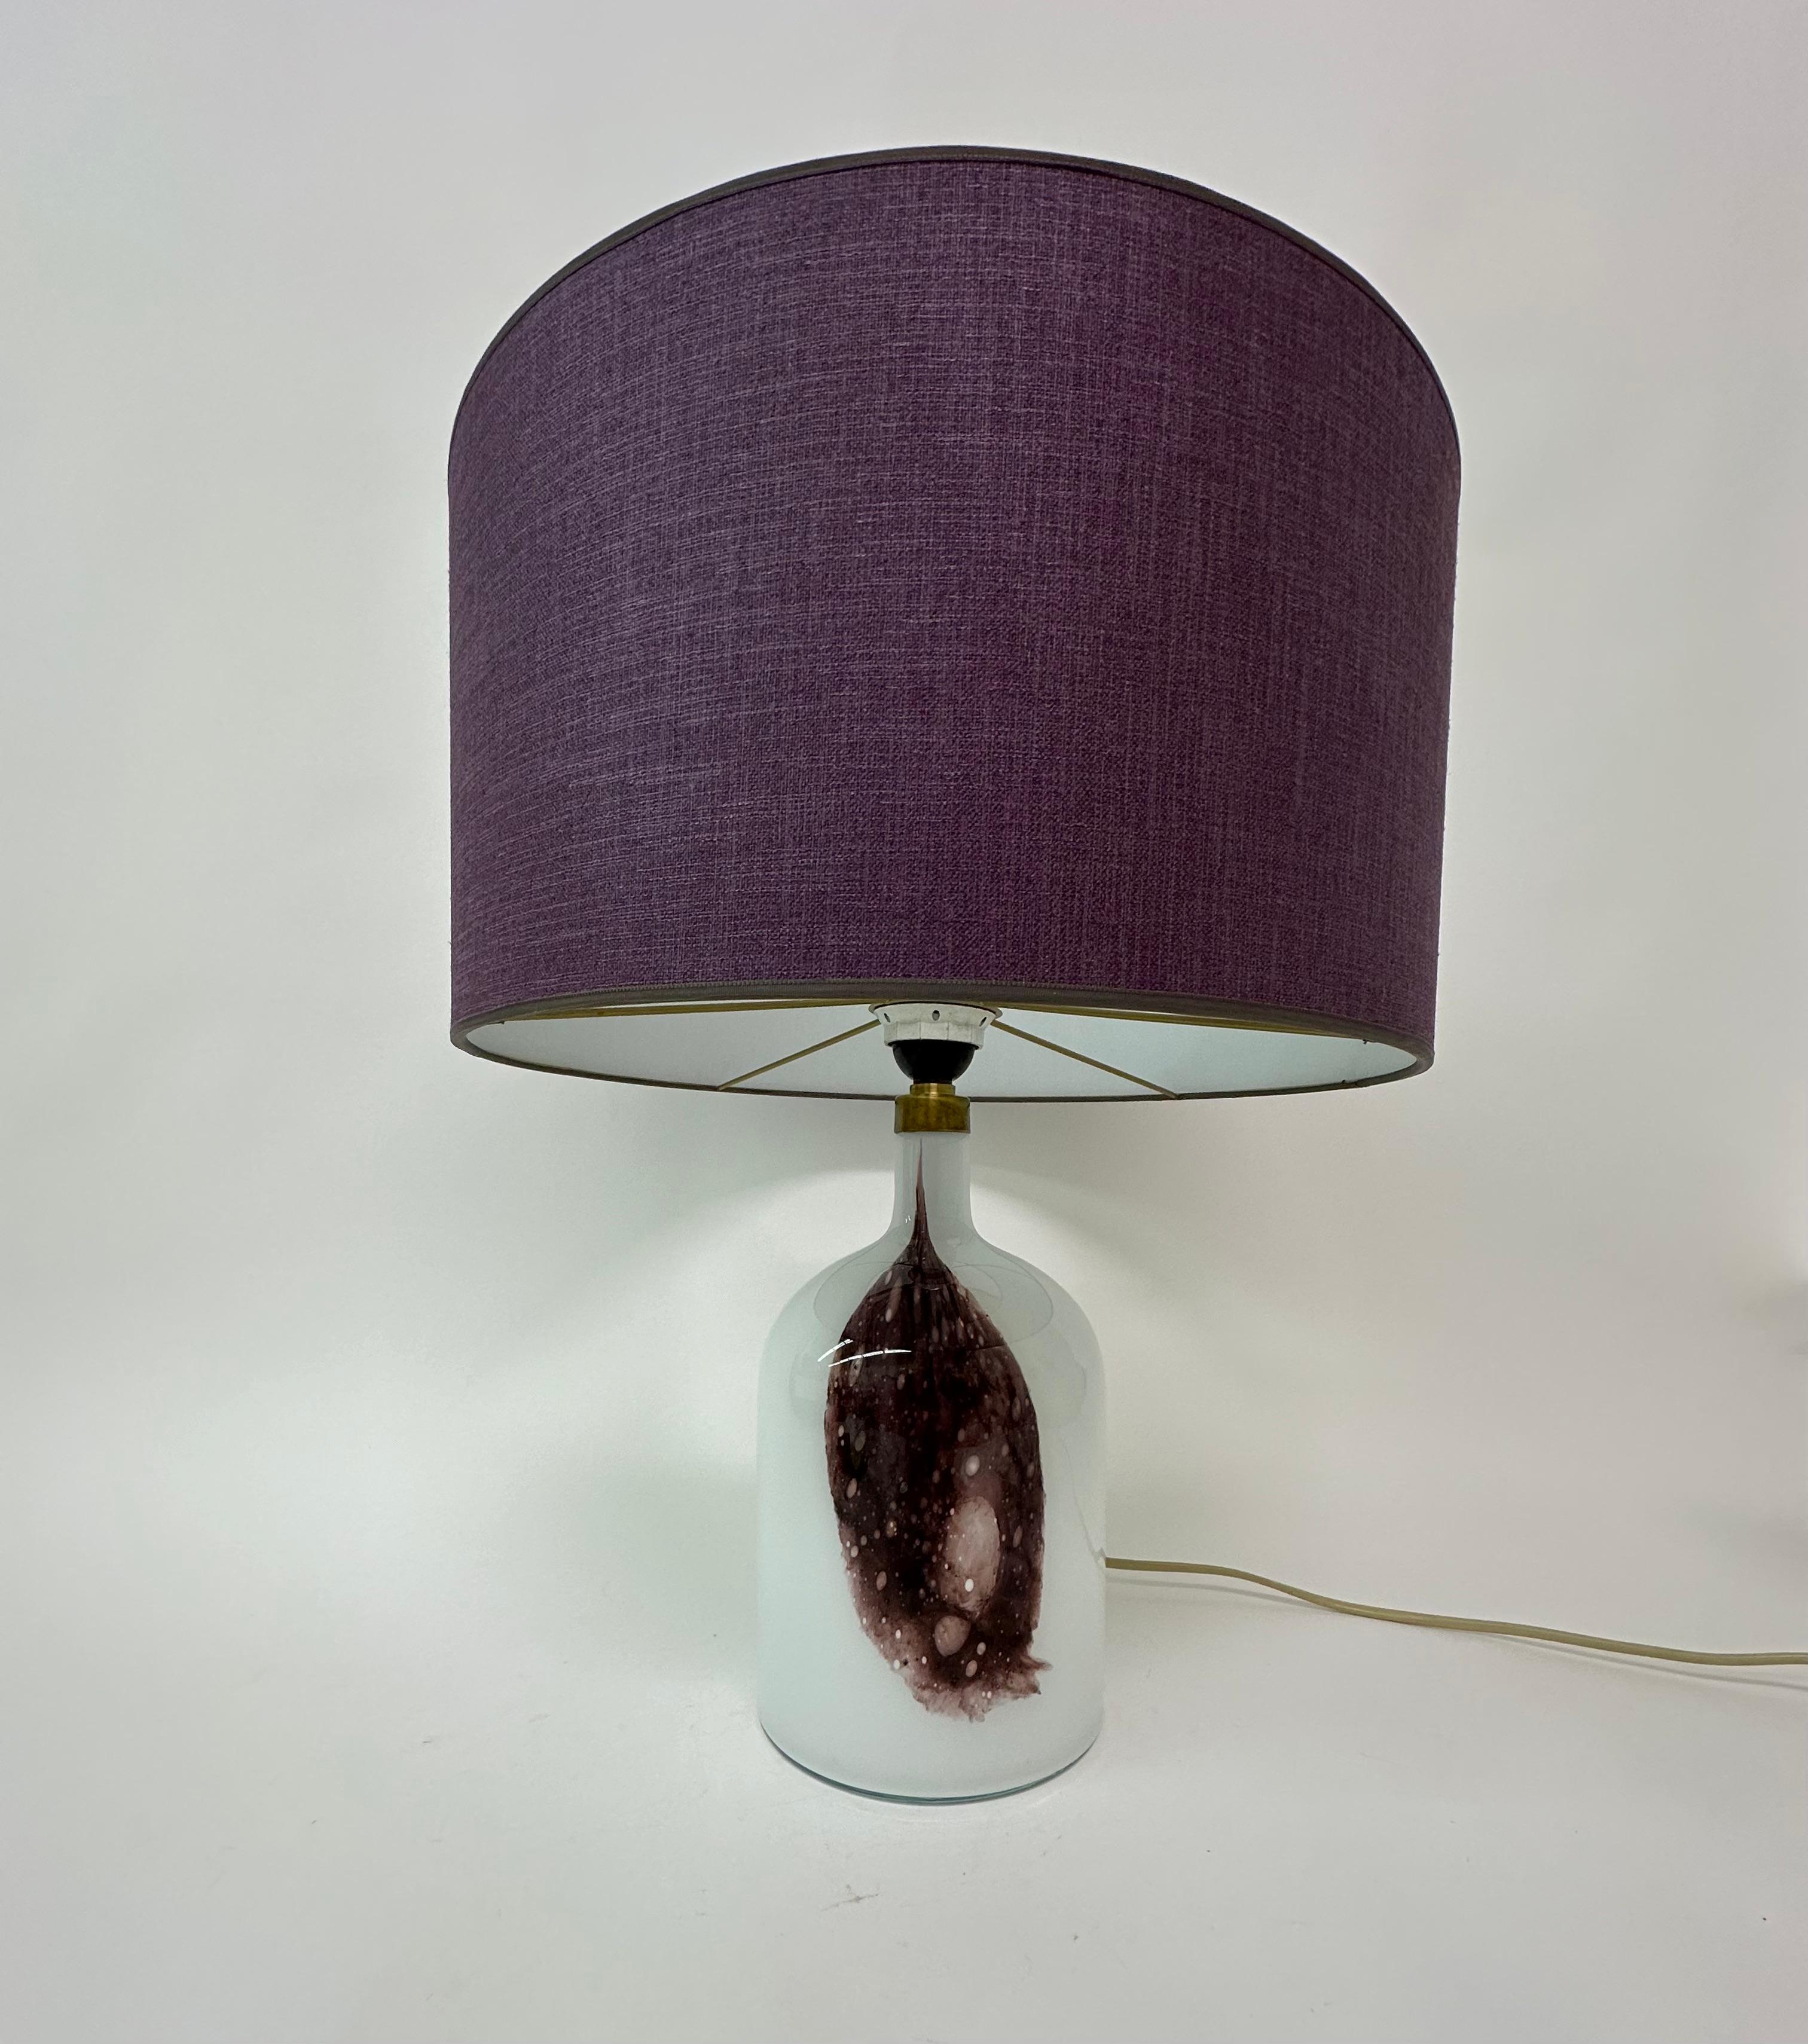 Lampe de table en verre Holmegaard Symmetrisk par Michael Bang , 1970's Danemark

Dimensions : 48,5cm H, 40cm Diamètre
Condit : Bon
MATERIAL : Verre, tissu
Couleur : Purple, Whiting